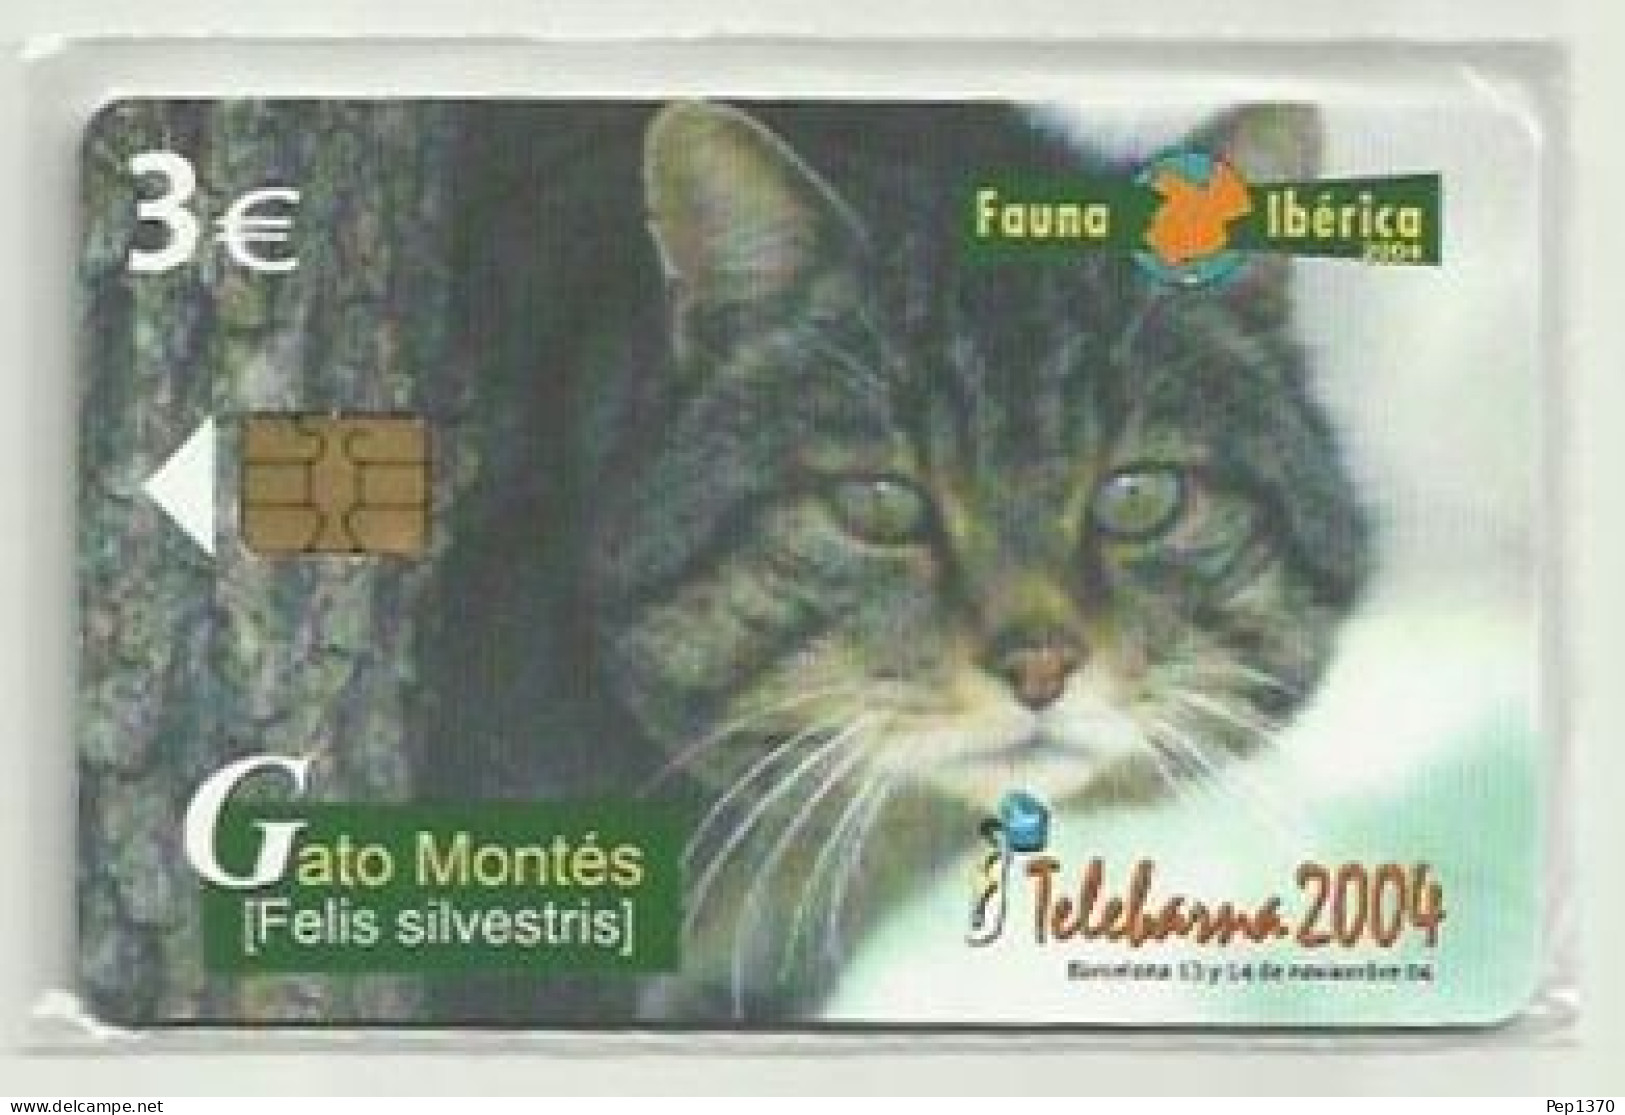 ESPAÑA 2004 - FAUNA - GATO MONTES (FELIS SILVESTRIS) - NUEVA Y PRECINTADA - Emisiones Privadas